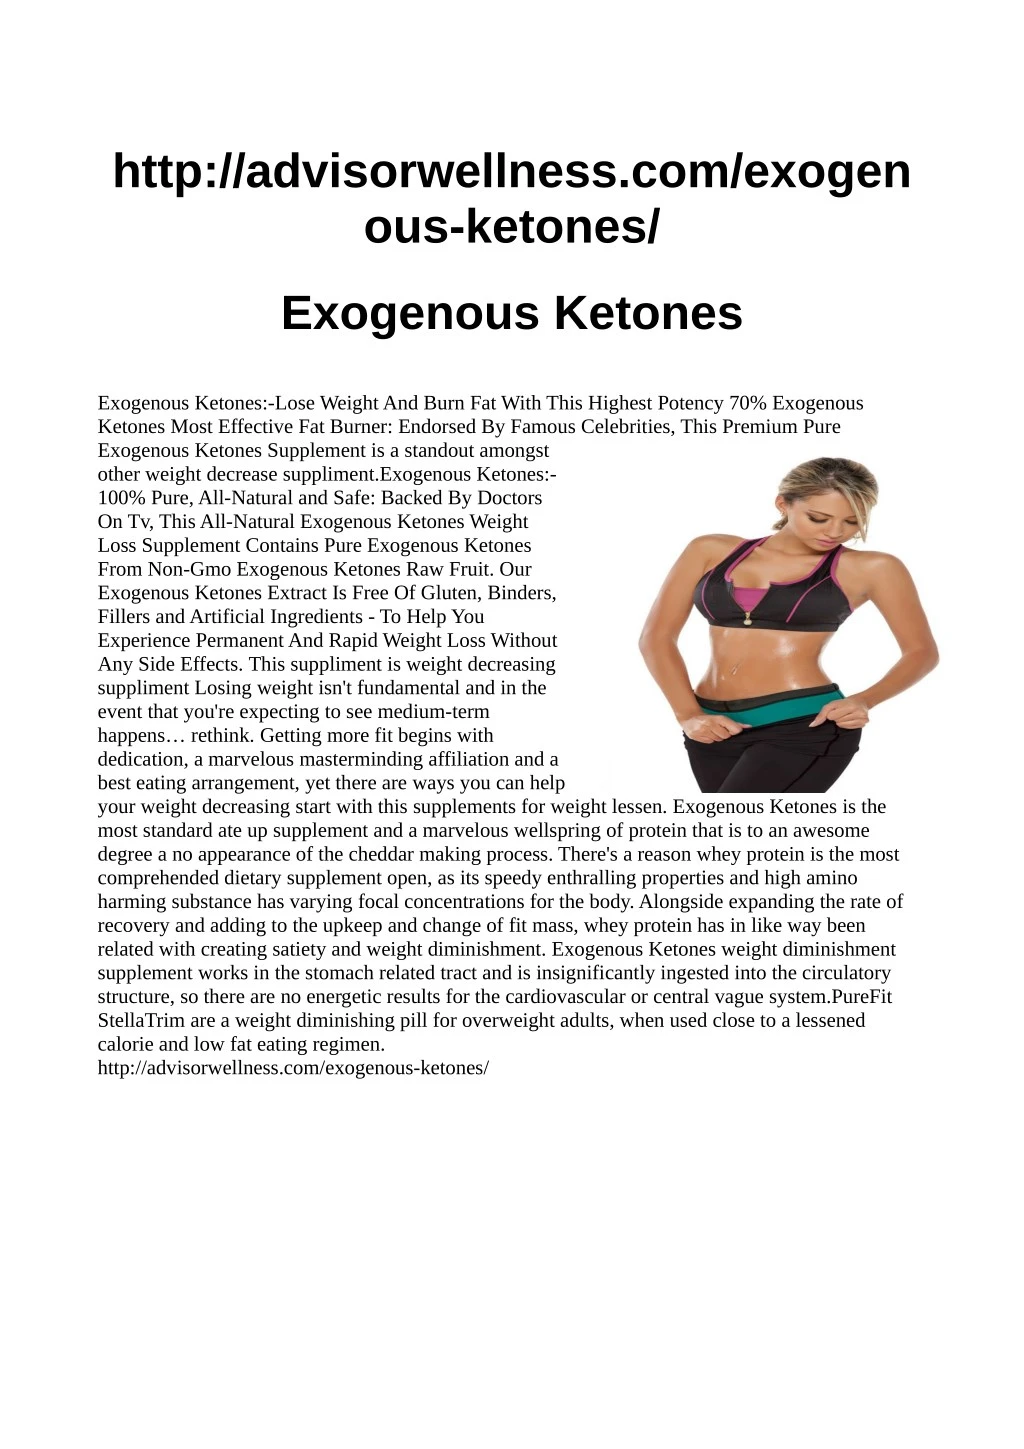 http advisorwellness com exogen ous ketones